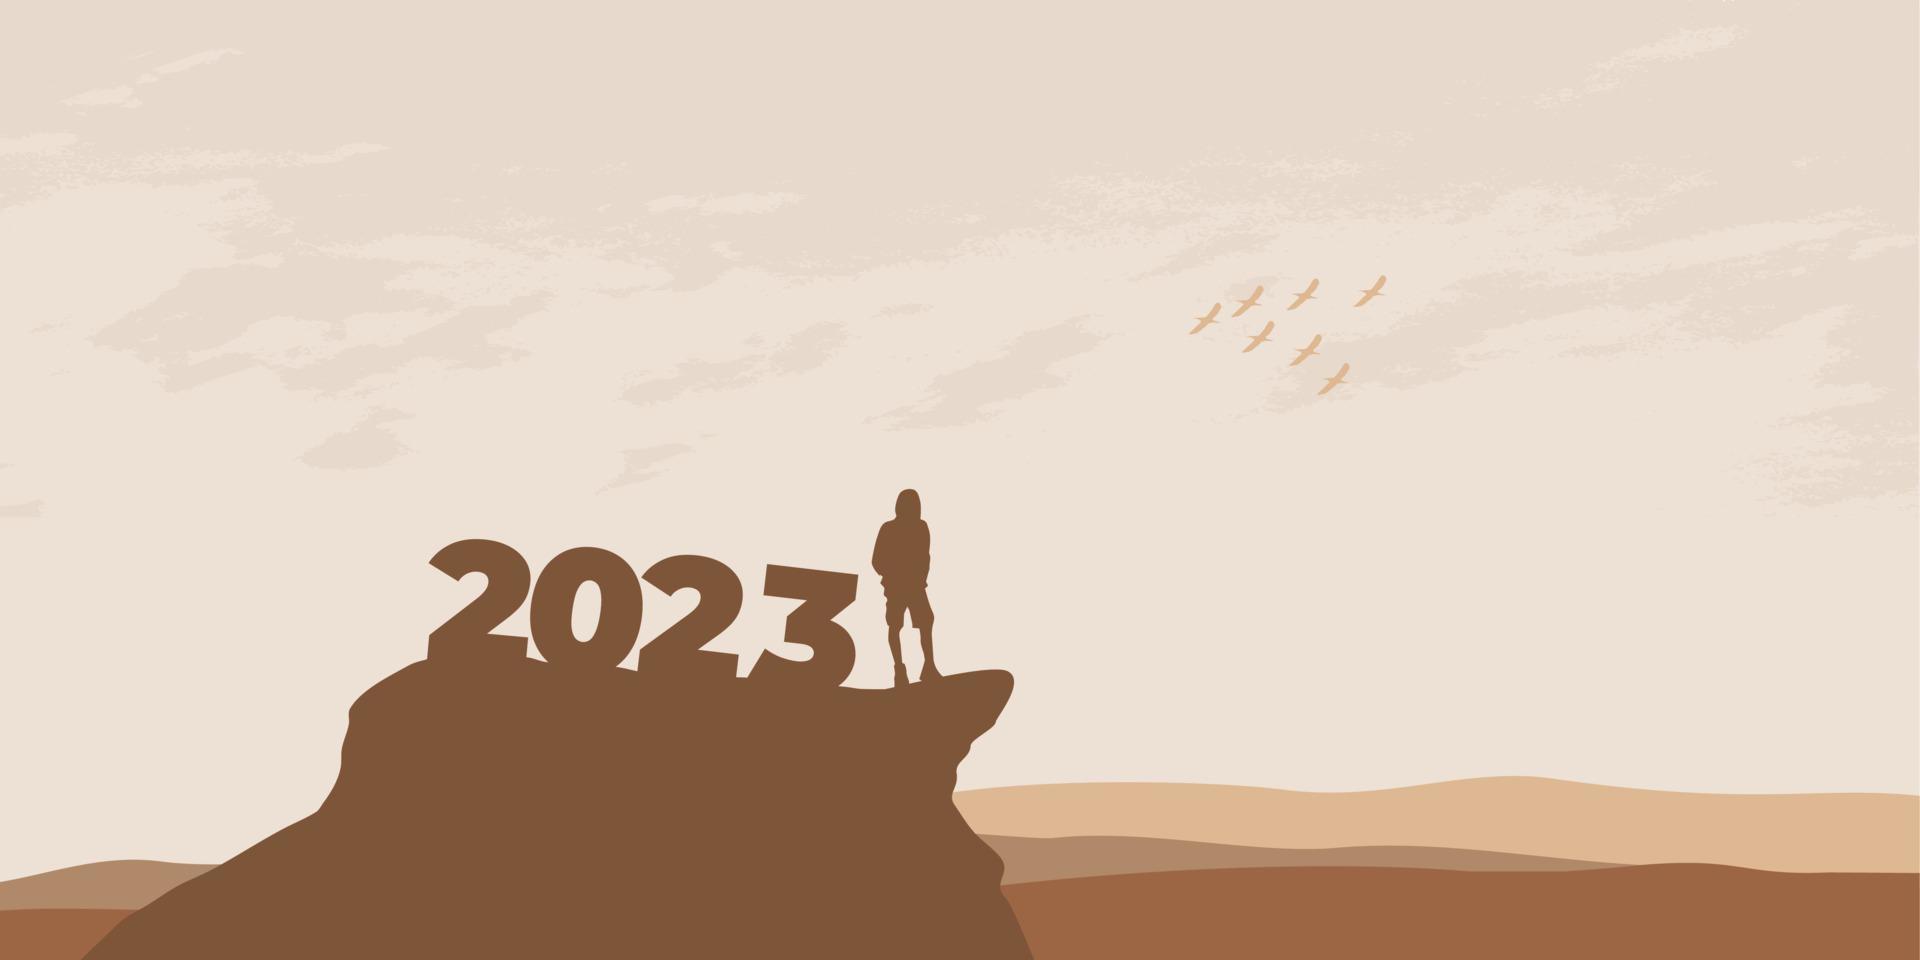 conceito de ano novo 2023. homem encontra o amanhecer nas montanhas para o ano novo de 2023. mensagem de citação inspiradora de motivação de novo começo no homem de silhueta vetor